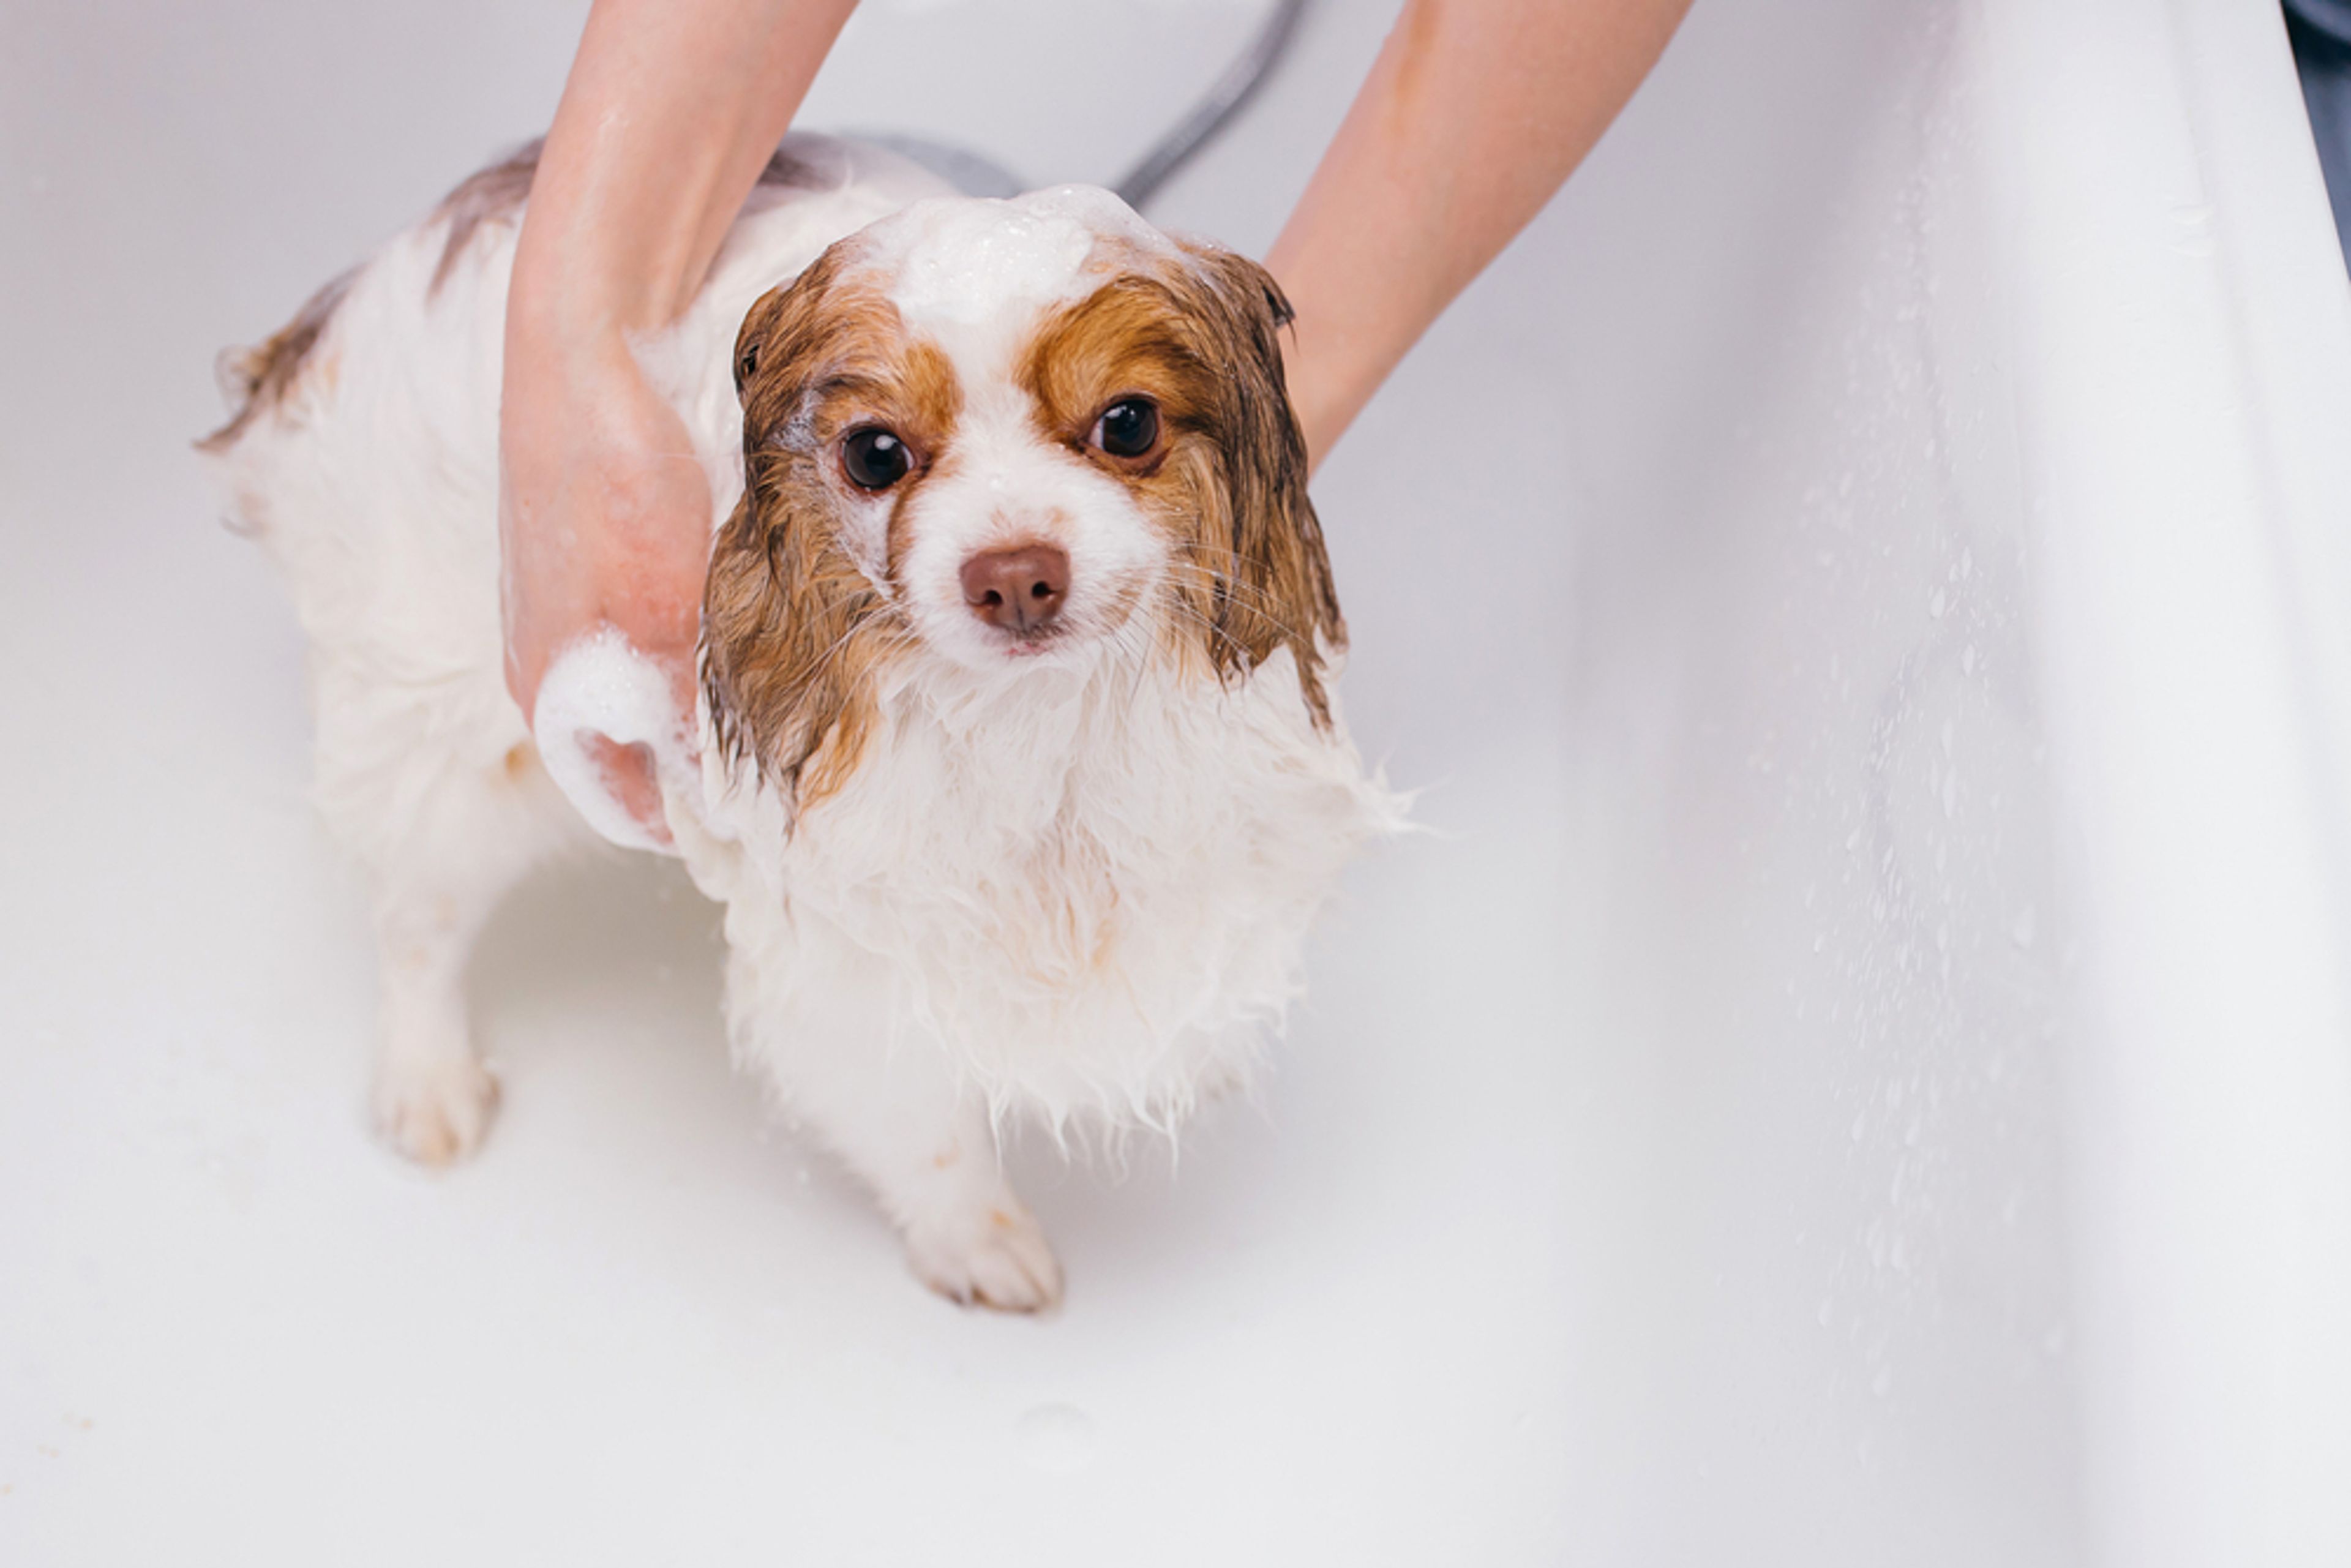 cucciolo di cane si fa il bagnetto nella vasca